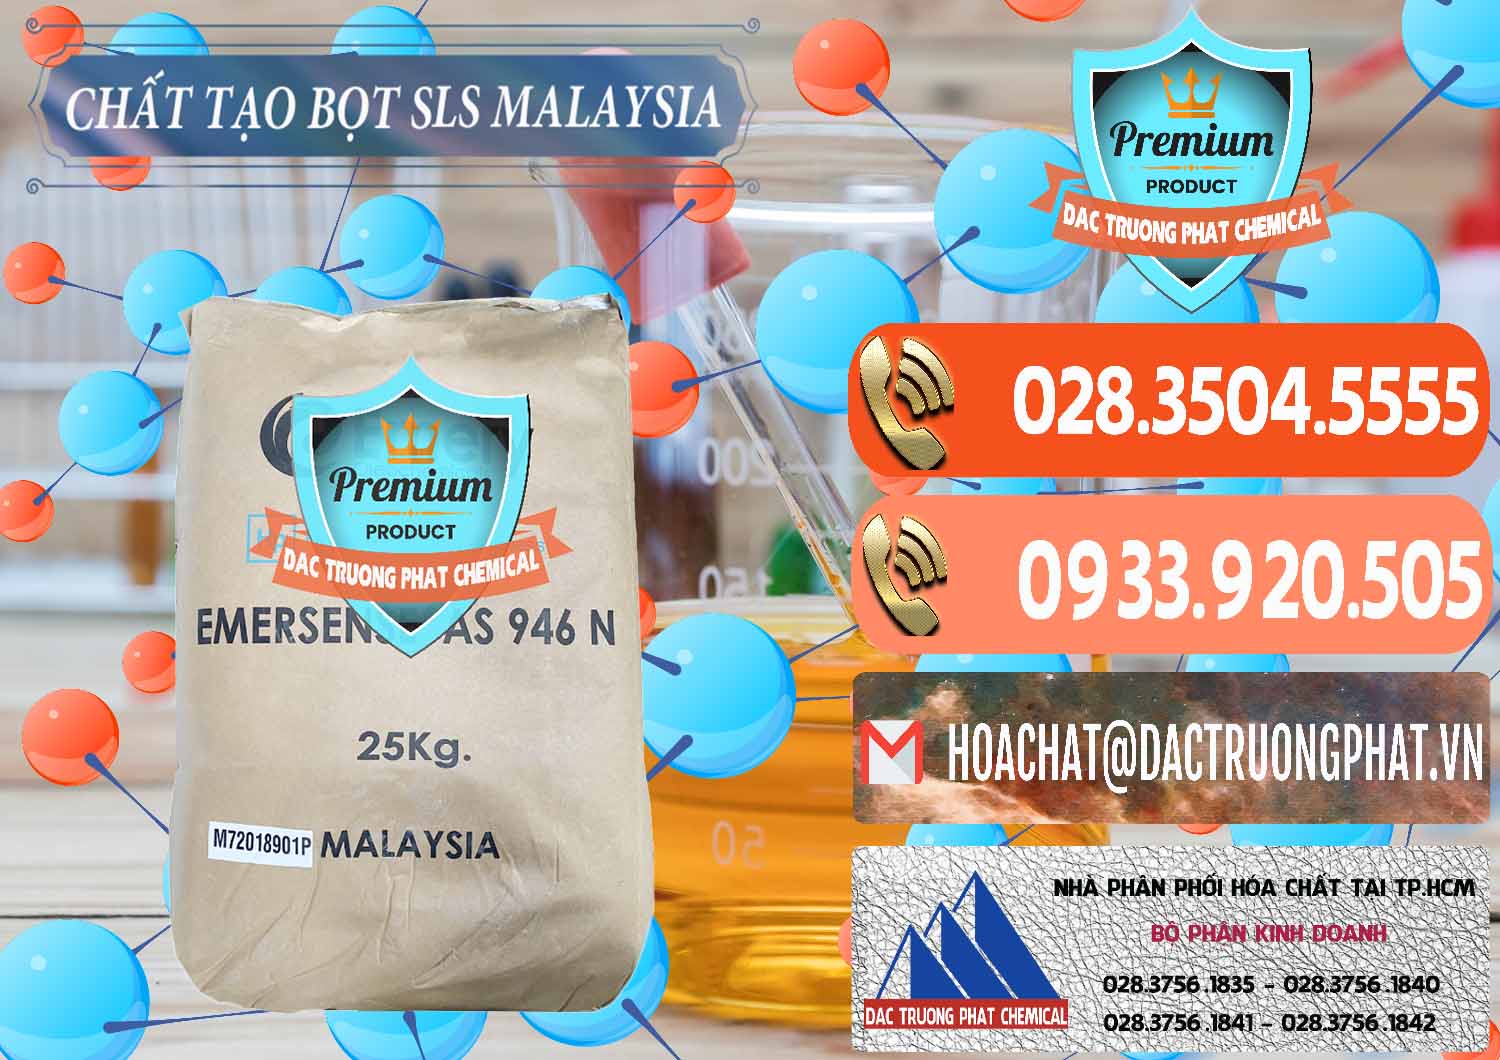 Đơn vị chuyên cung ứng ( bán ) Chất Tạo Bọt SLS Emery - Emersense AS 946N Mã Lai Malaysia - 0423 - Công ty phân phối - nhập khẩu hóa chất tại TP.HCM - hoachatmientay.com